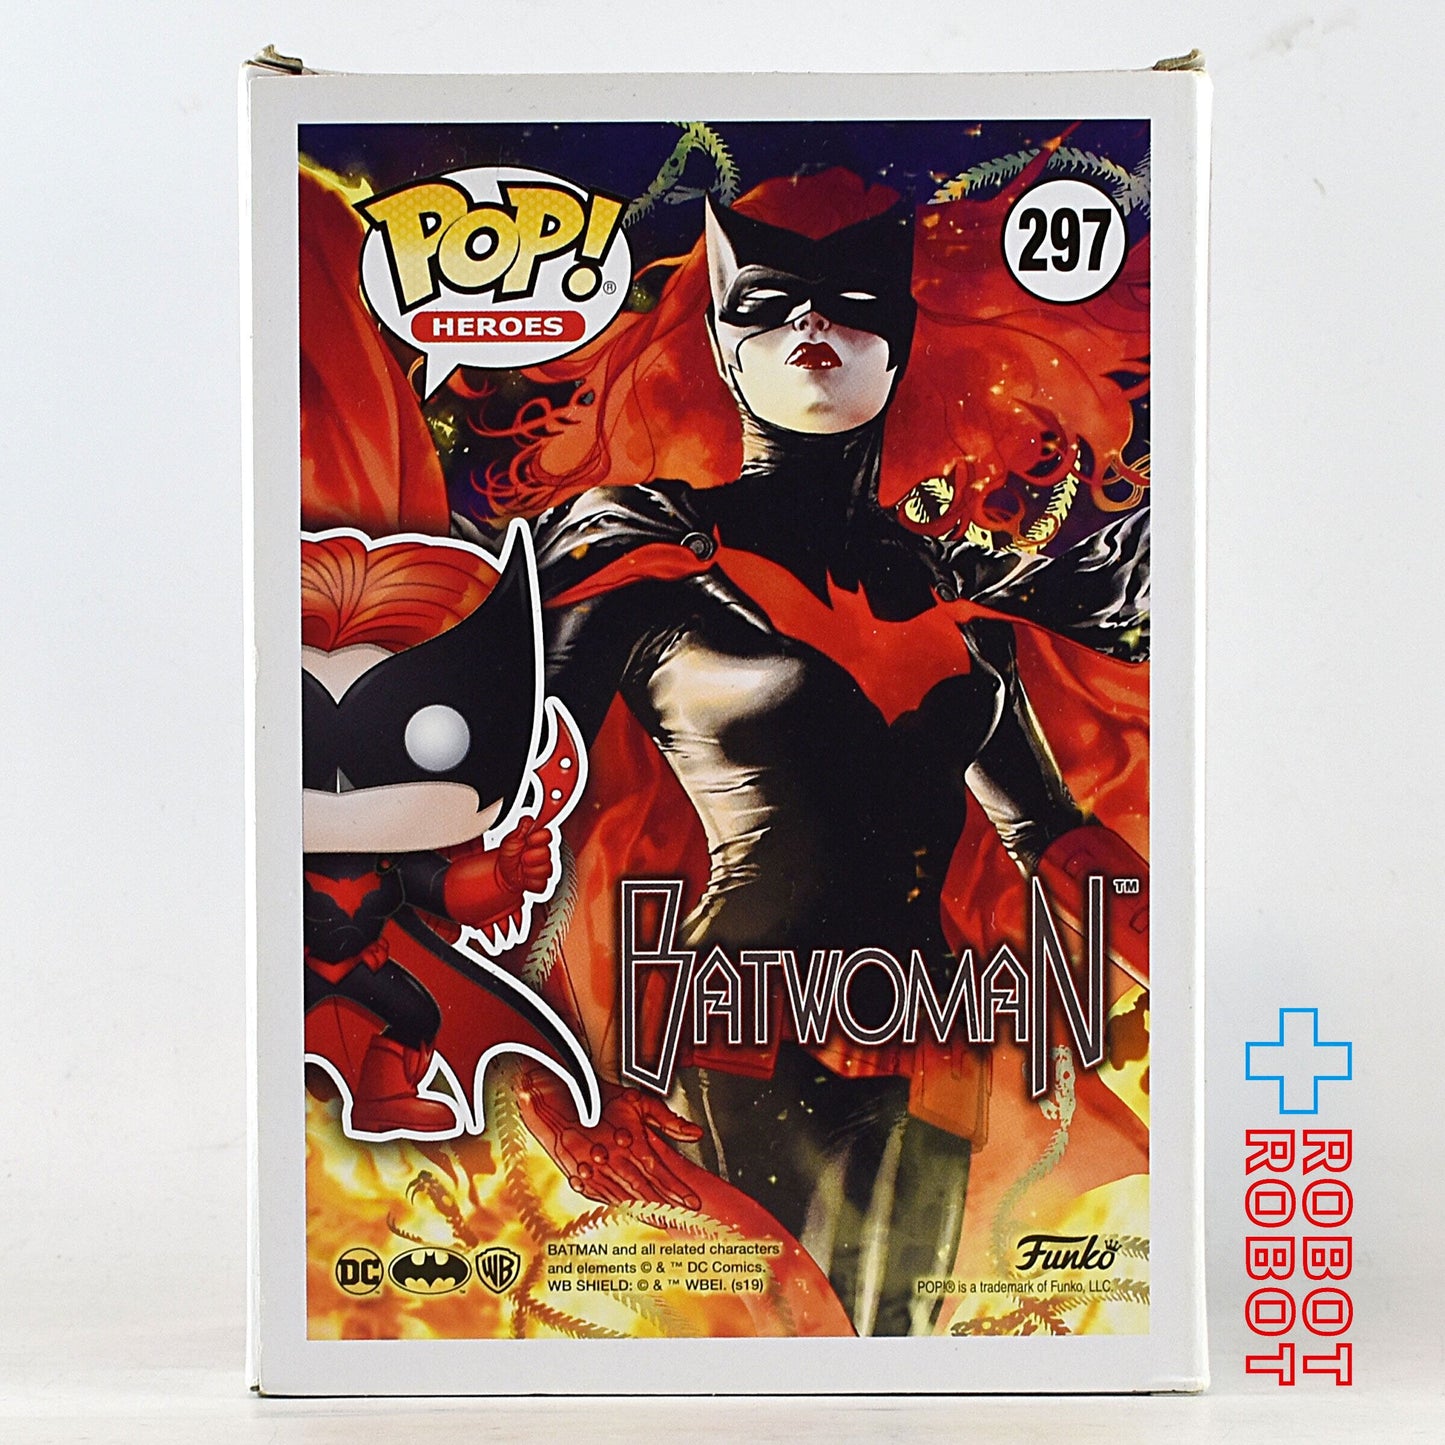 ファンコ POP! DC スーパーヒーローズ 297 バットウーマン スペシャルエディション ビニールフィギュア 箱入